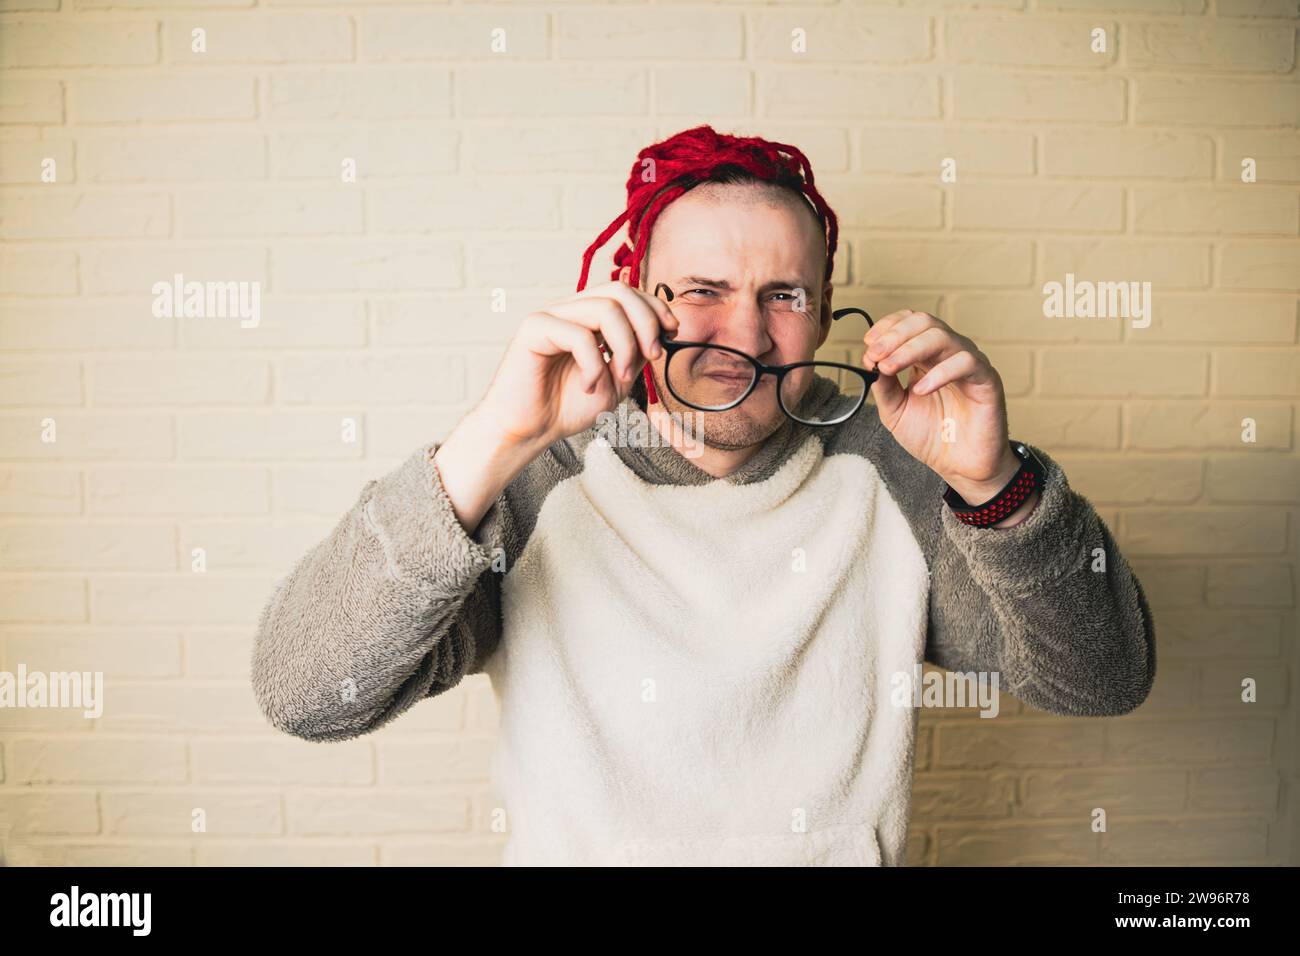 Un bel homme adulte avec des lunettes et des dreadlocks rouges plisse et regarde la caméra contre un mur de briques blanches. Banque D'Images